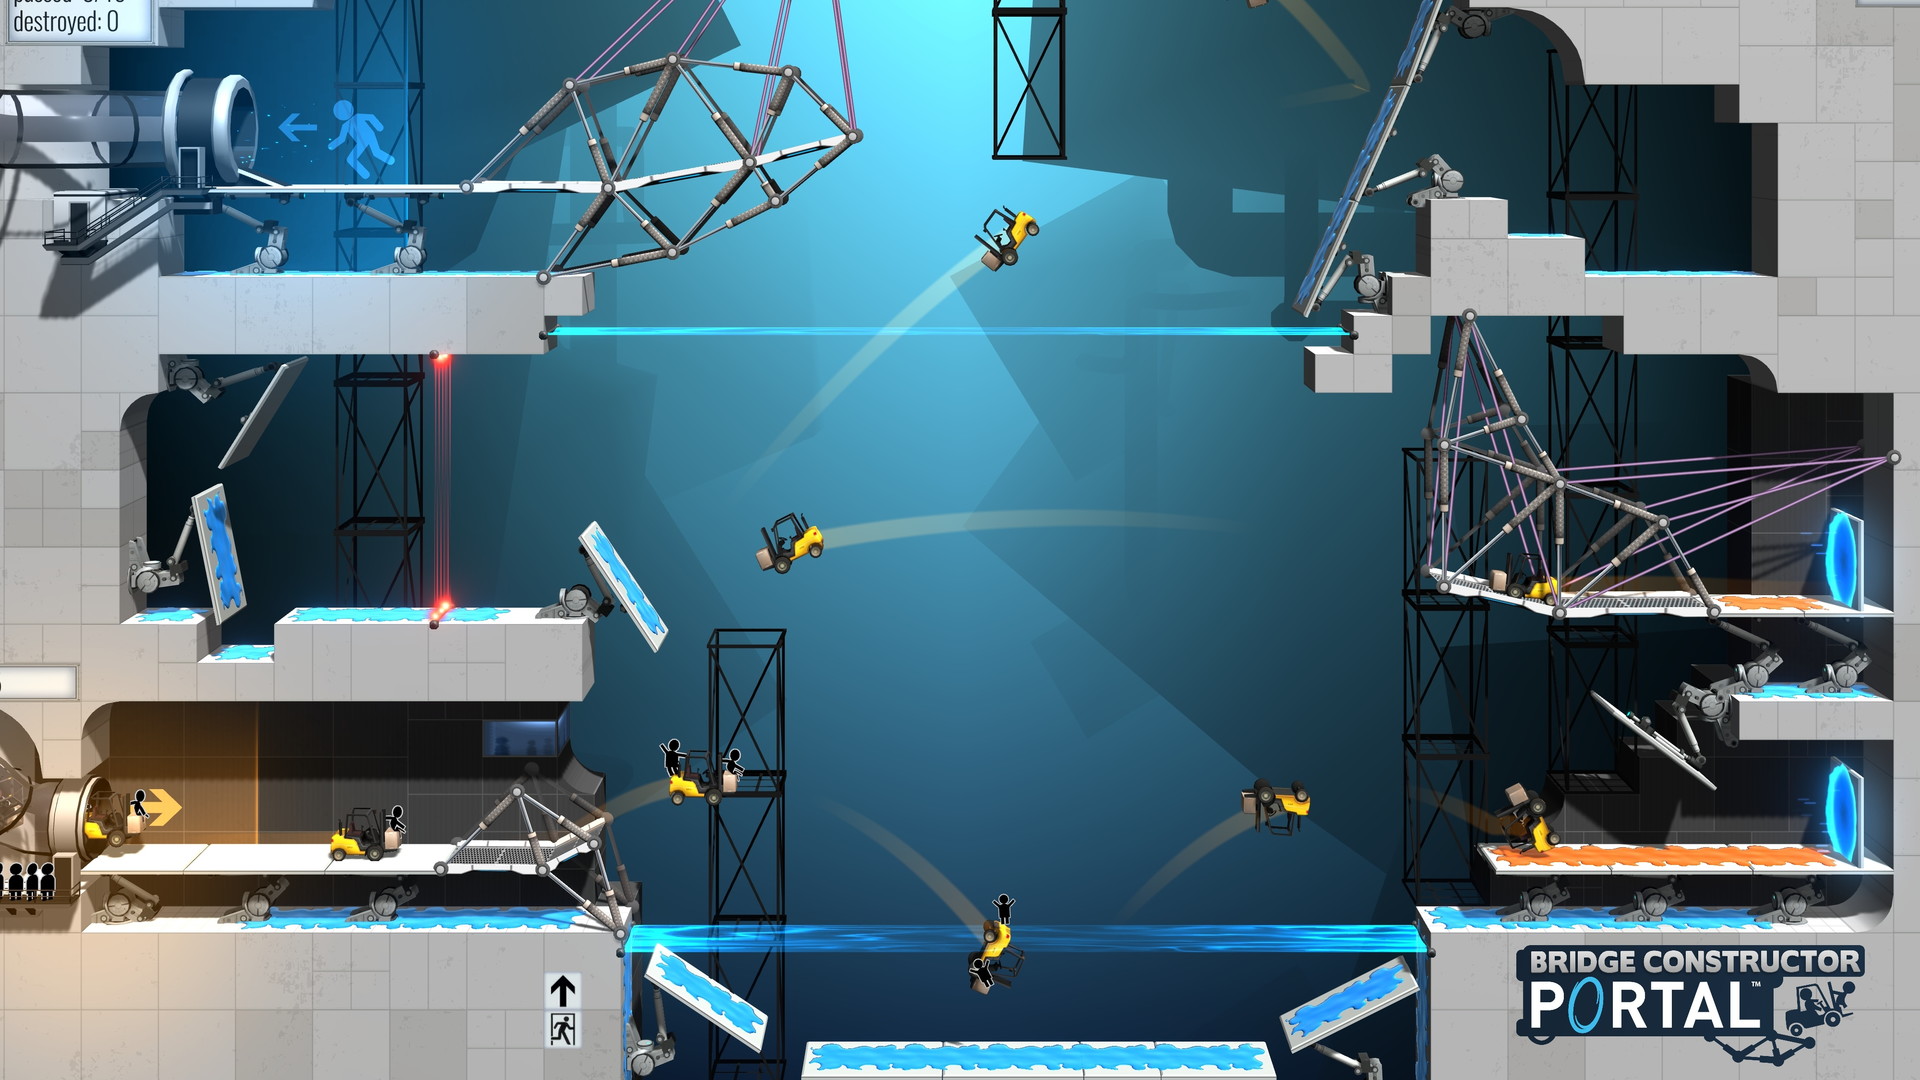 Bridge Constructor Portal - screenshot 5